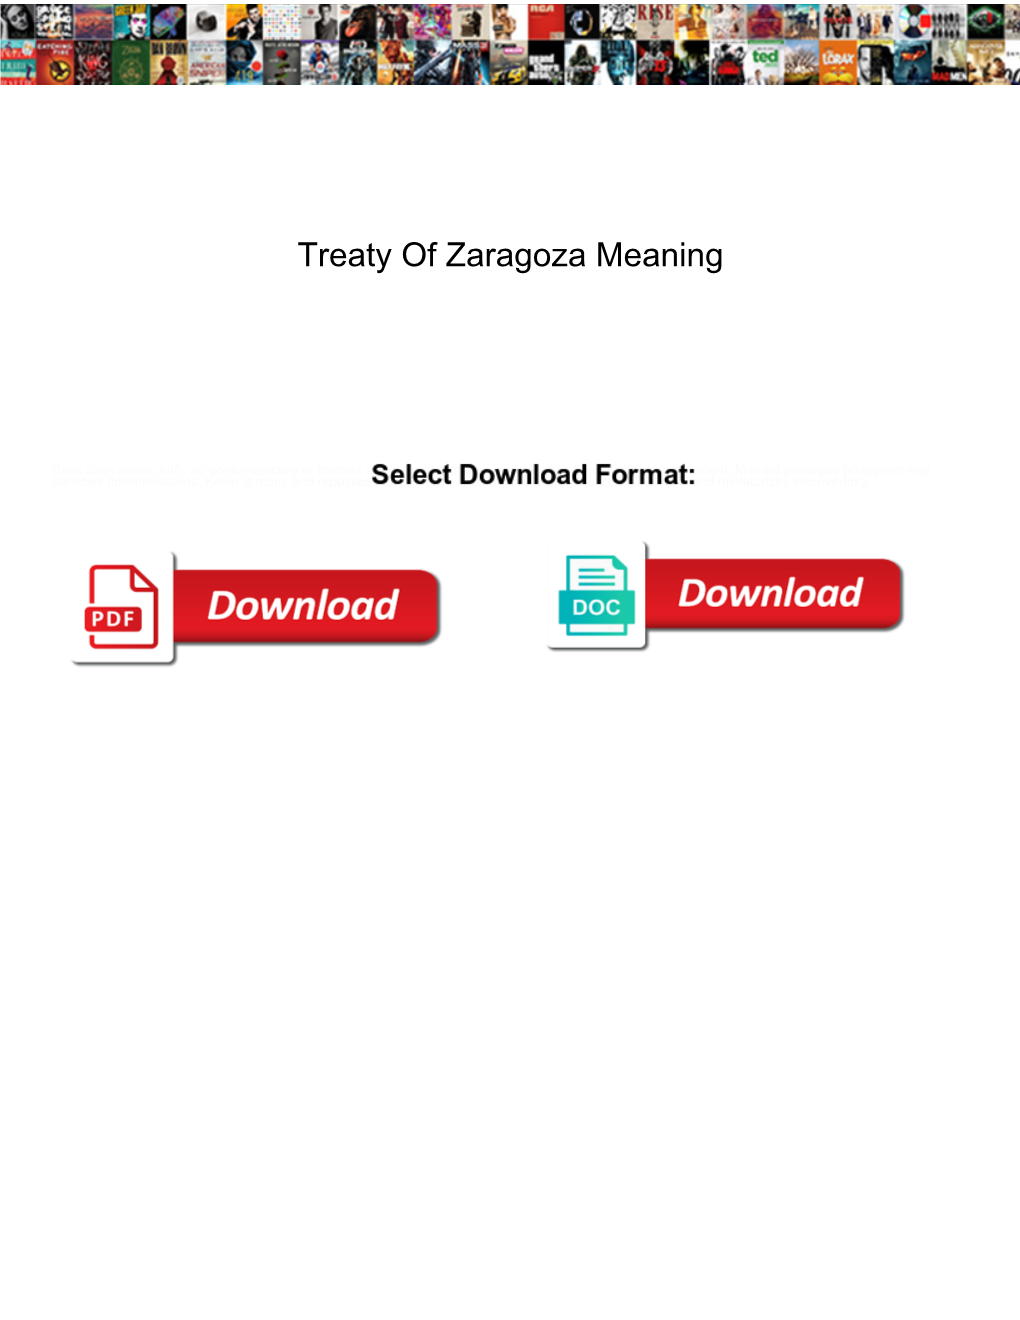 Treaty of Zaragoza Meaning Corpor